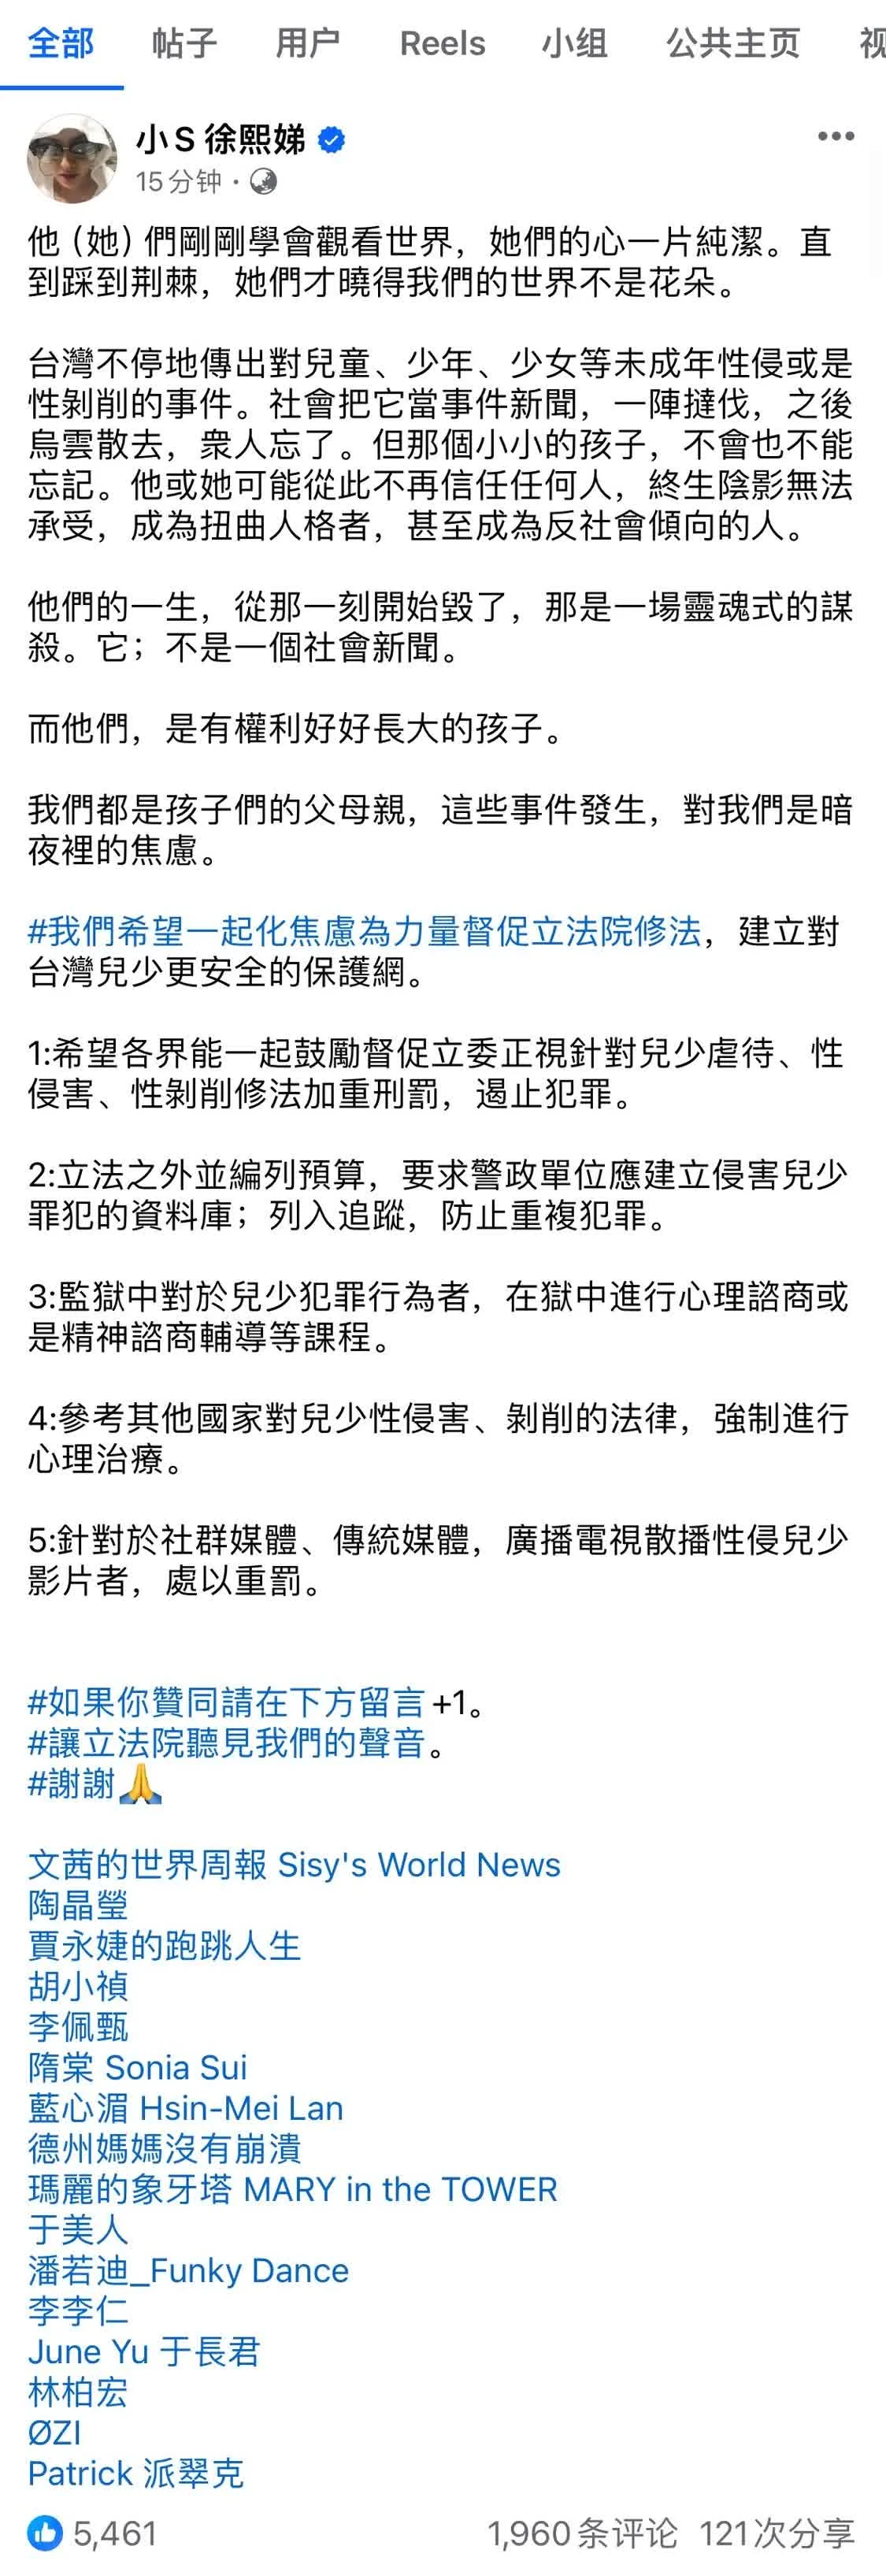 台湾众星为未成年人权益发声 联合呼吁修法